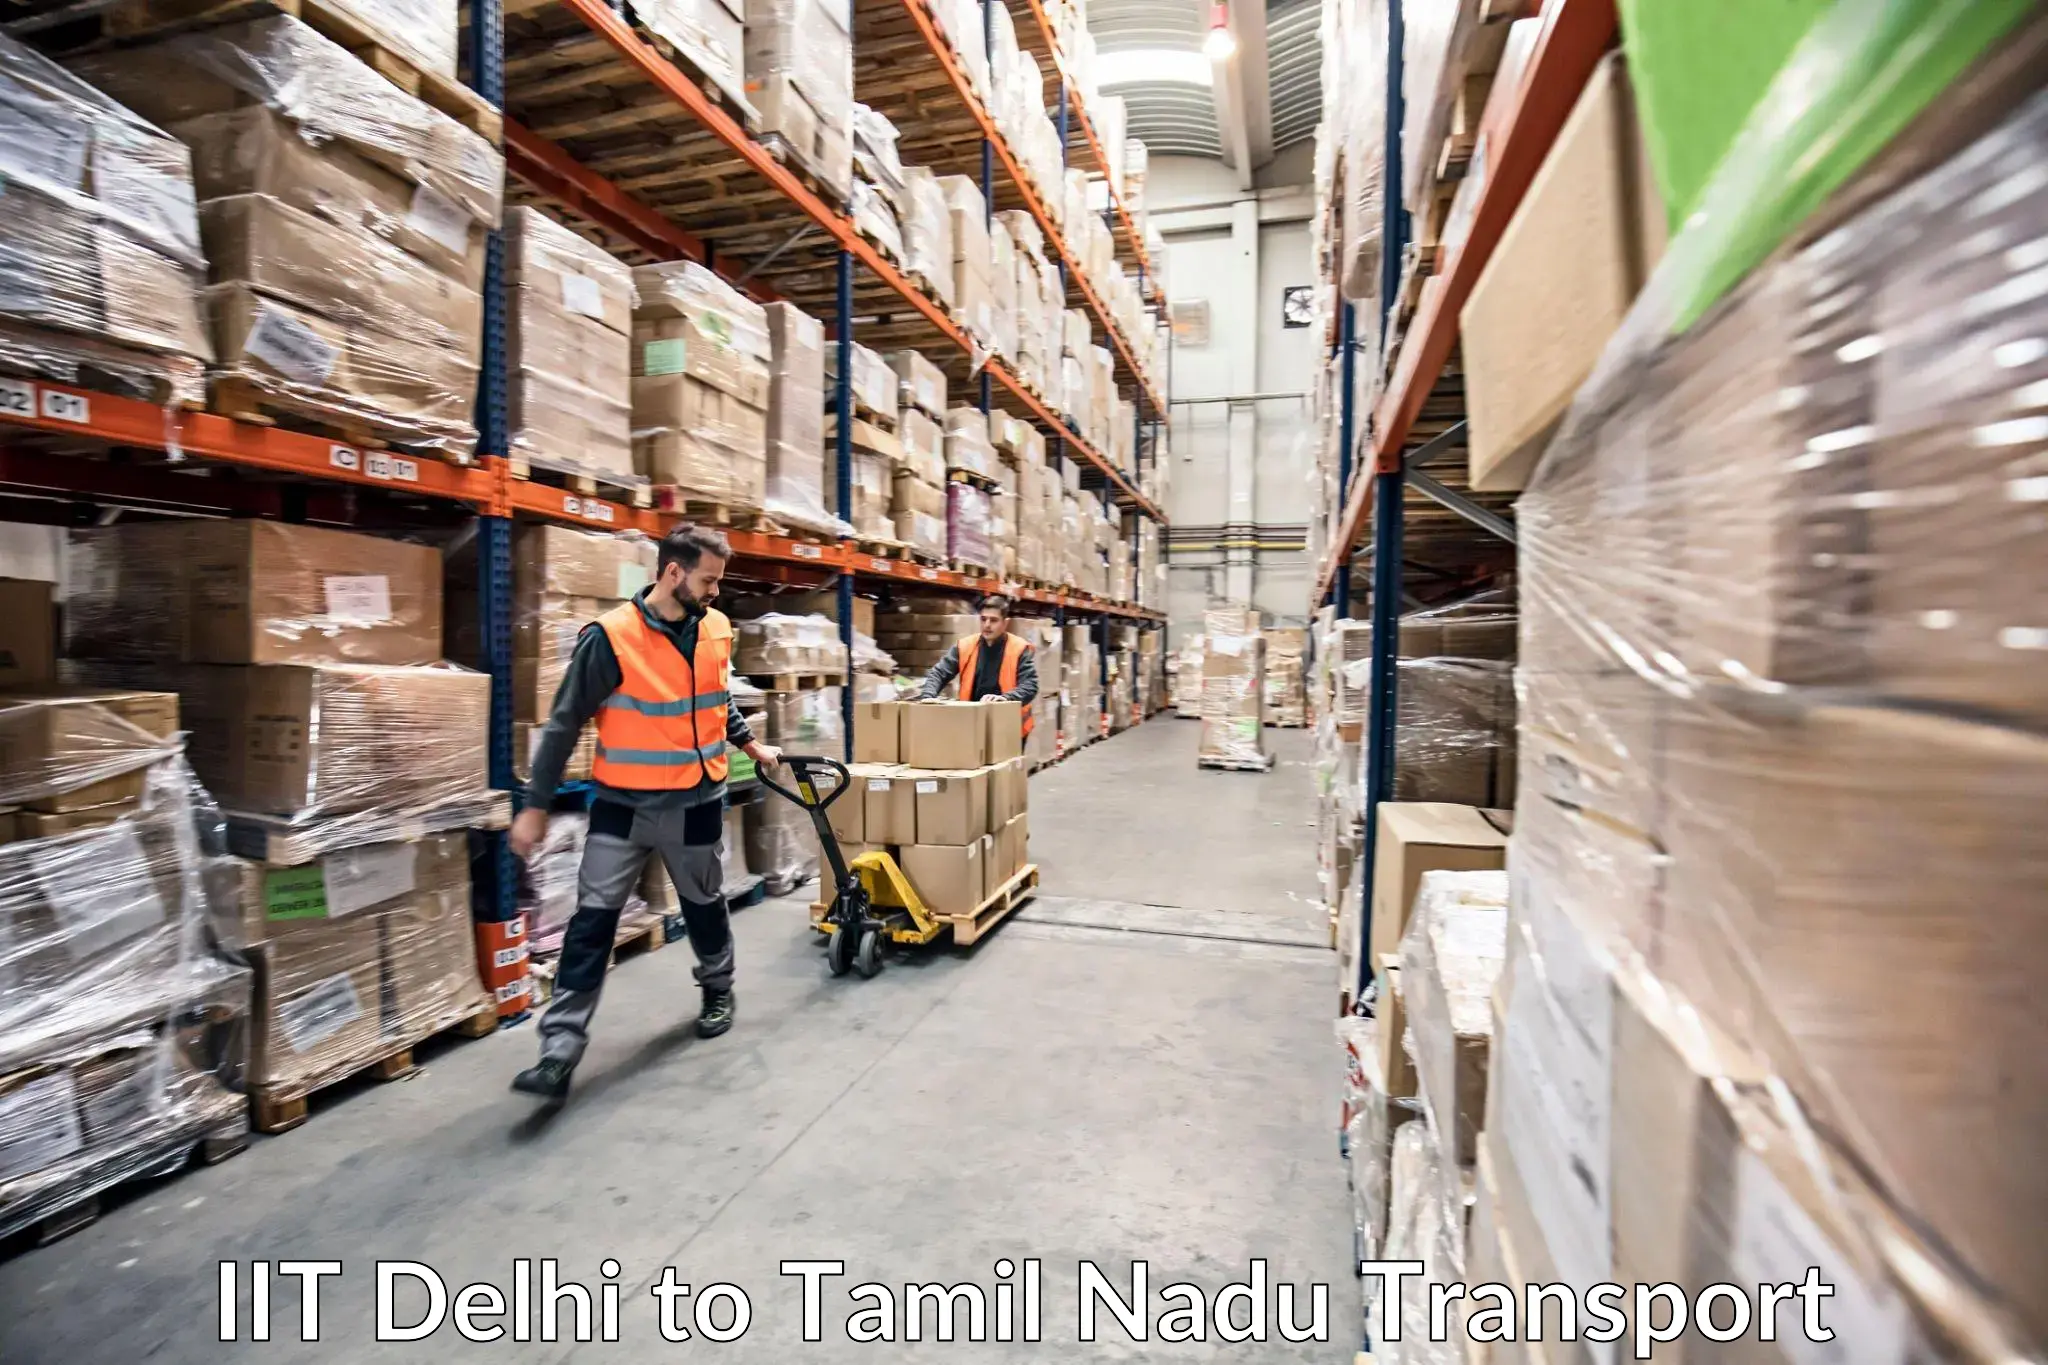 Part load transport service in India IIT Delhi to Tirunelveli